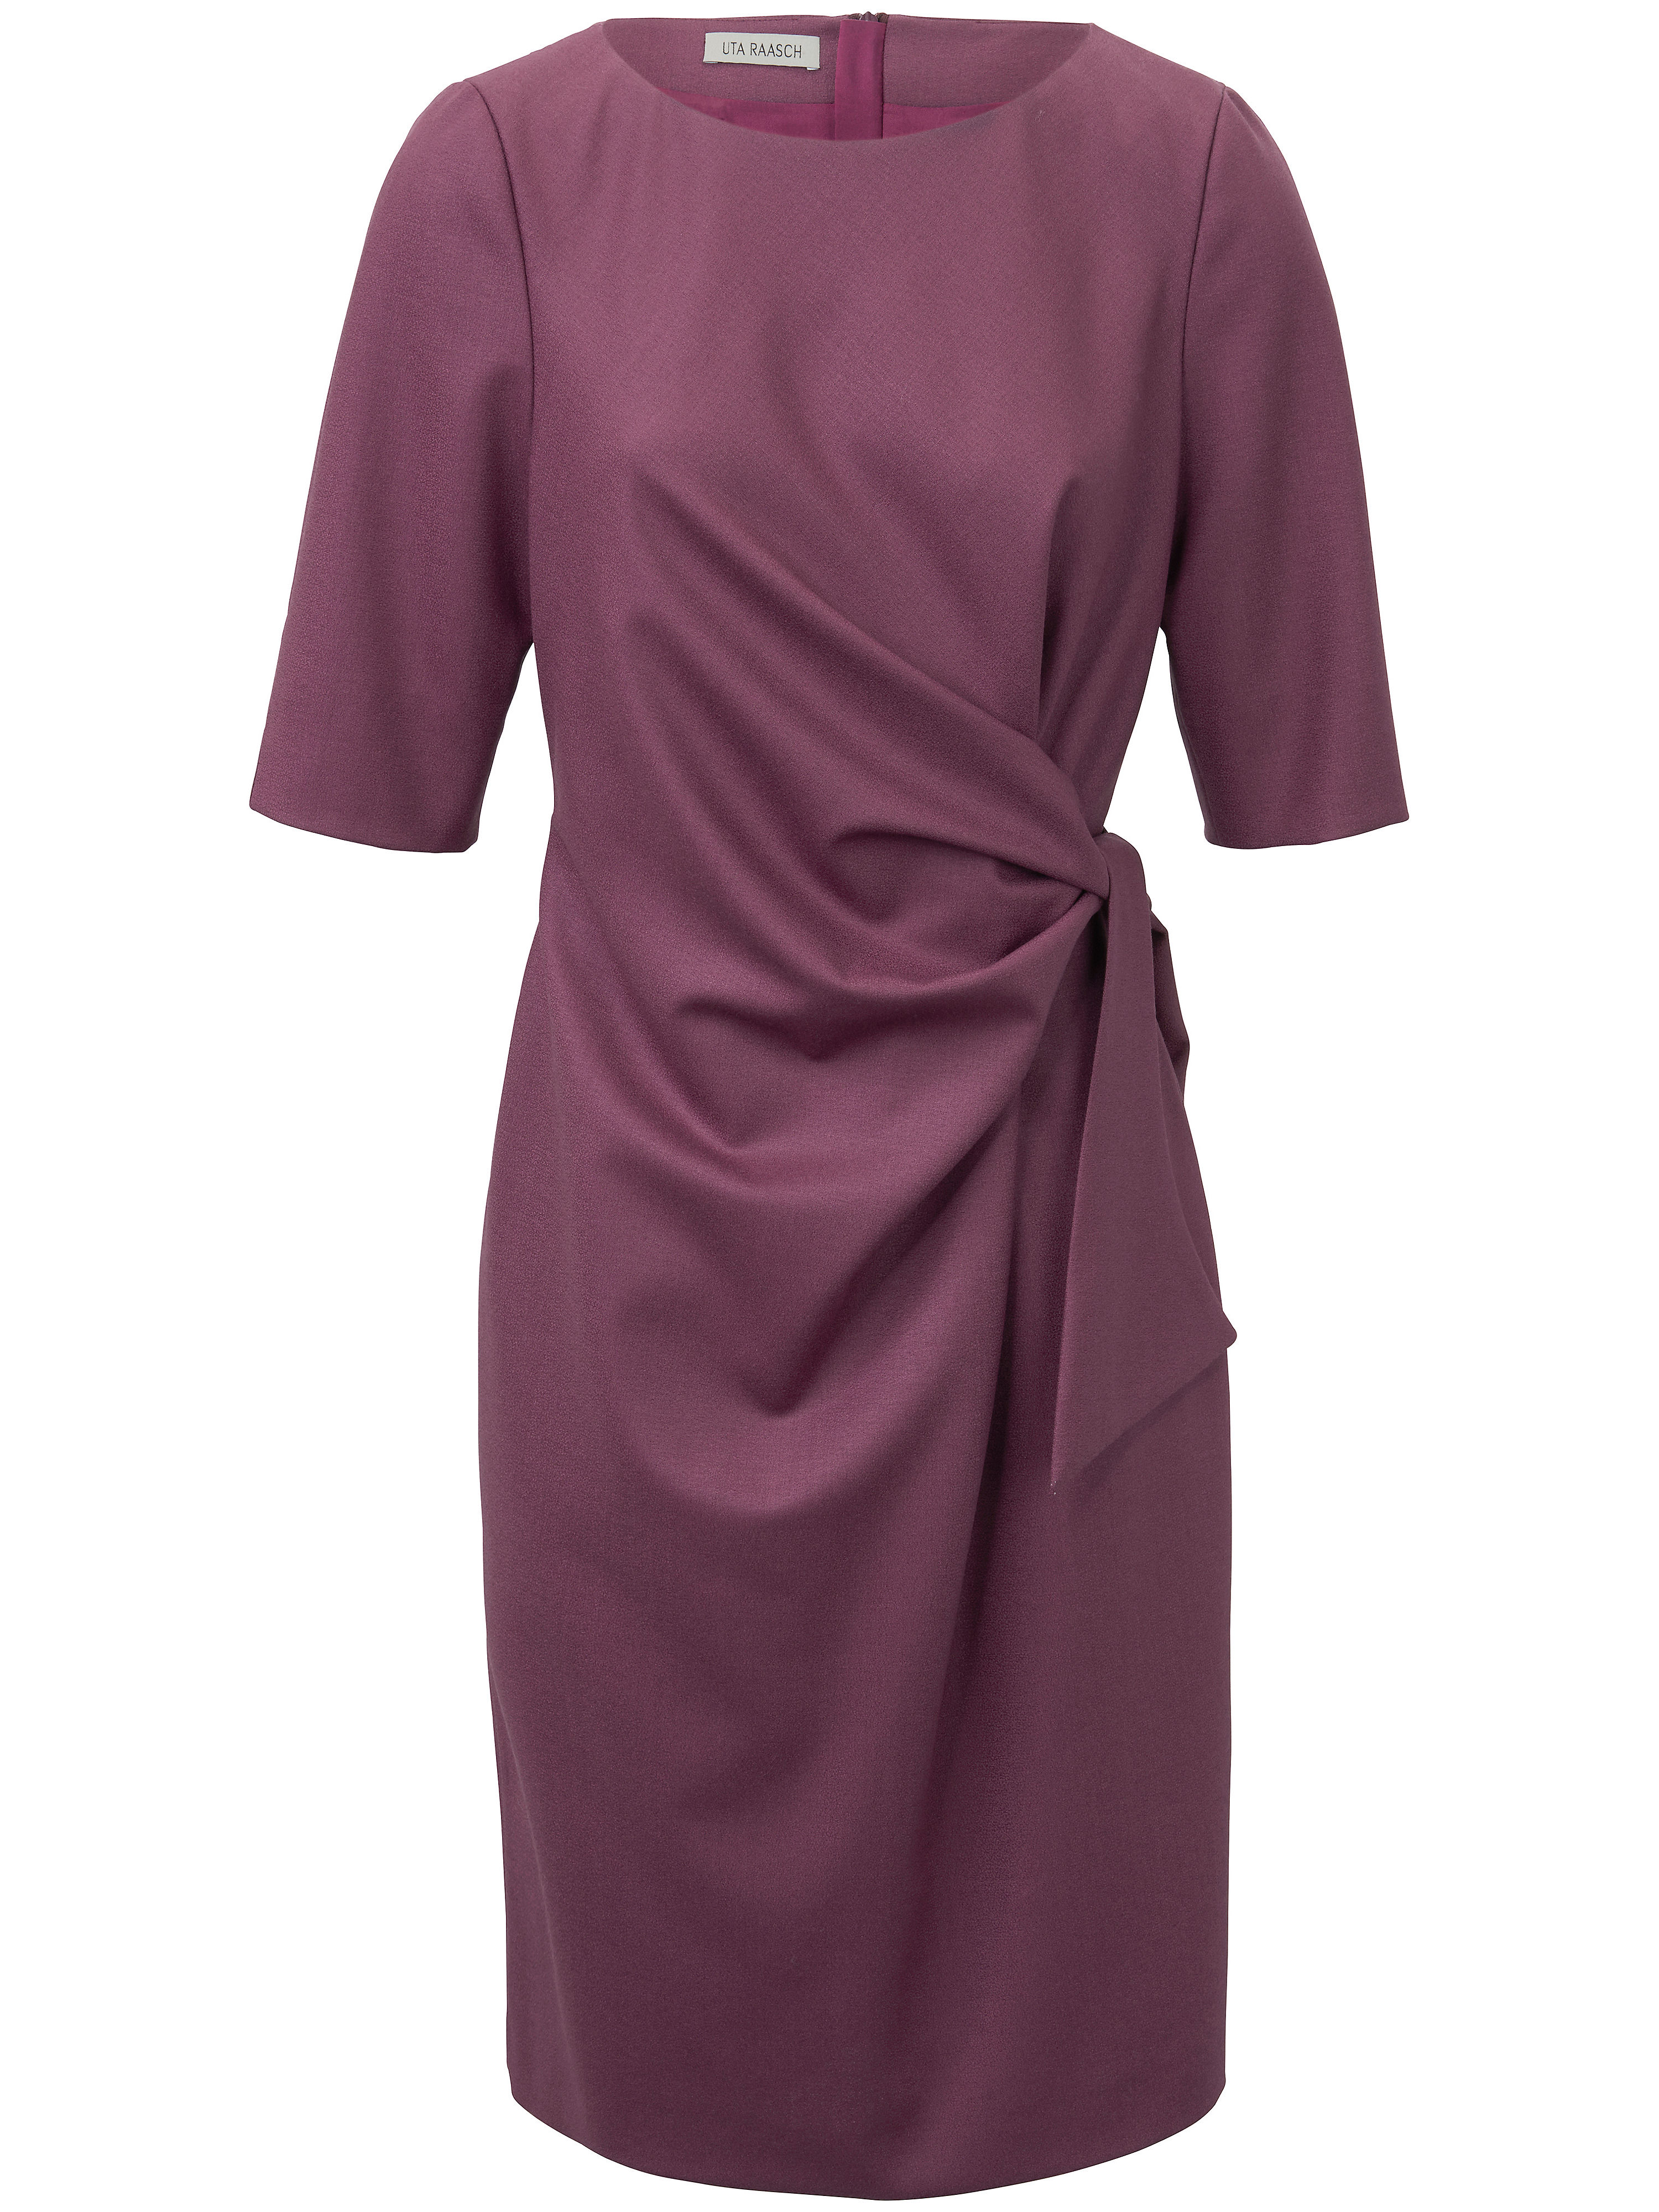 Uta Raasch jurk met 3/4-mouwen paars